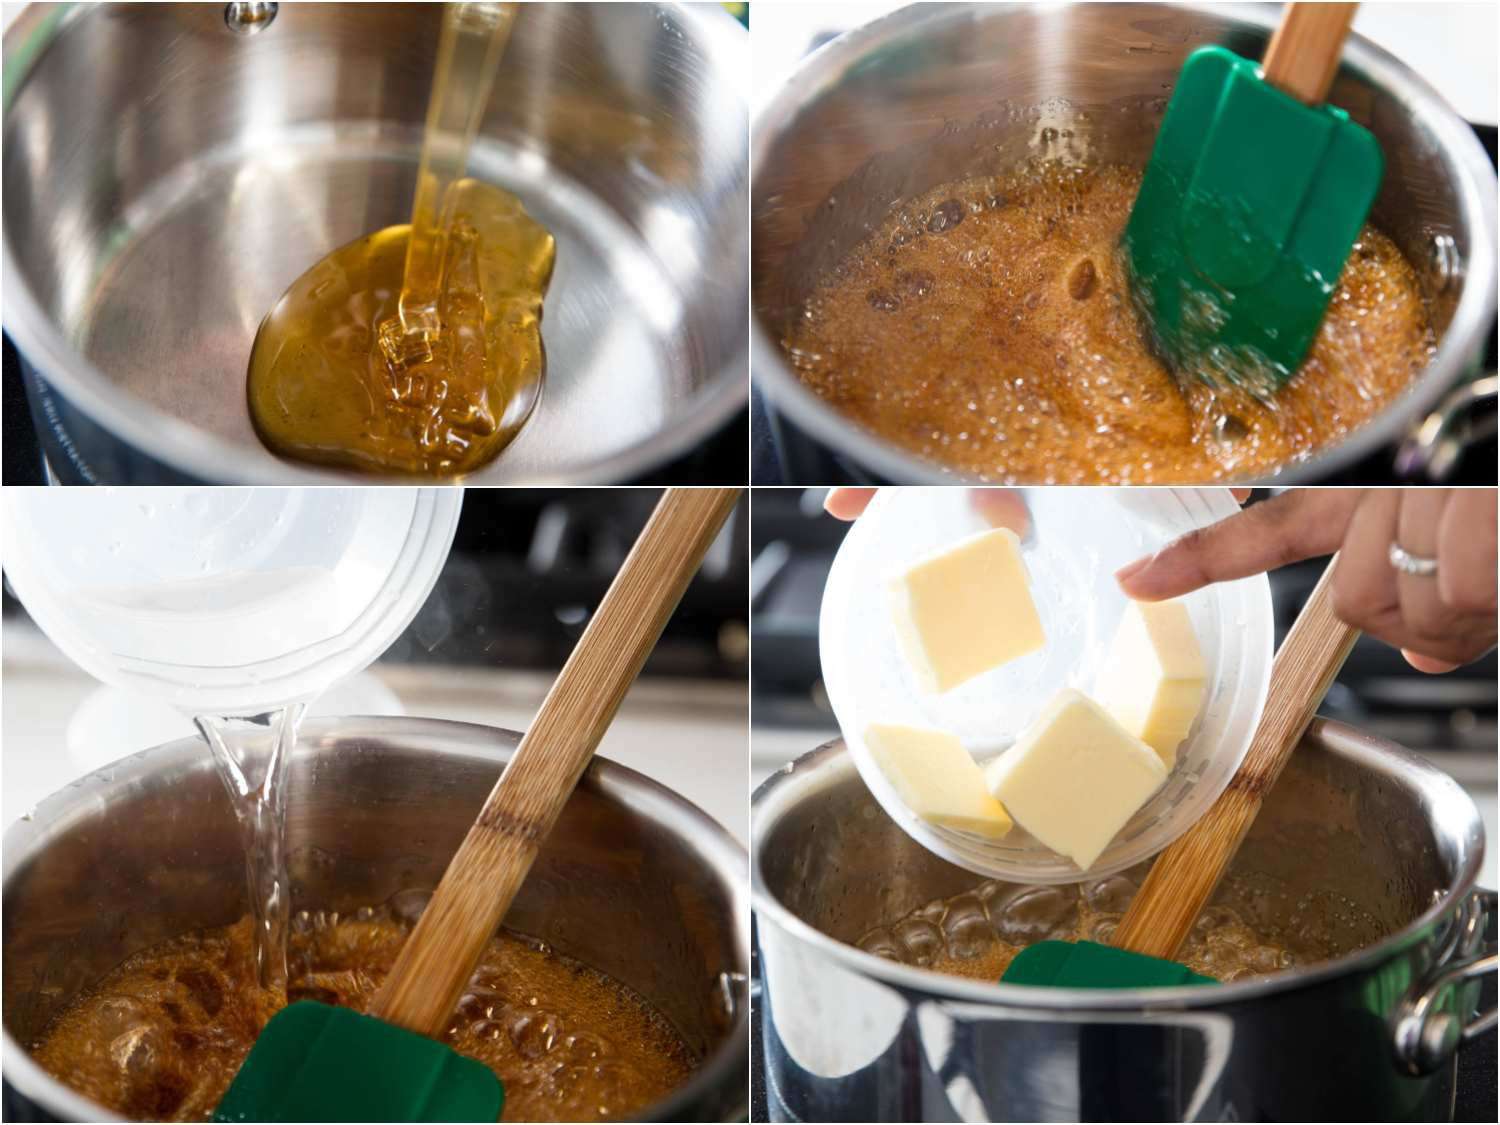 制作焦糖蜂蜜的拼贴画:将蜂蜜倒入平底锅，用有弹性的铲子搅拌，当蜂蜜起泡时，向蜂蜜中加水，加入黄油gydF4y2Ba